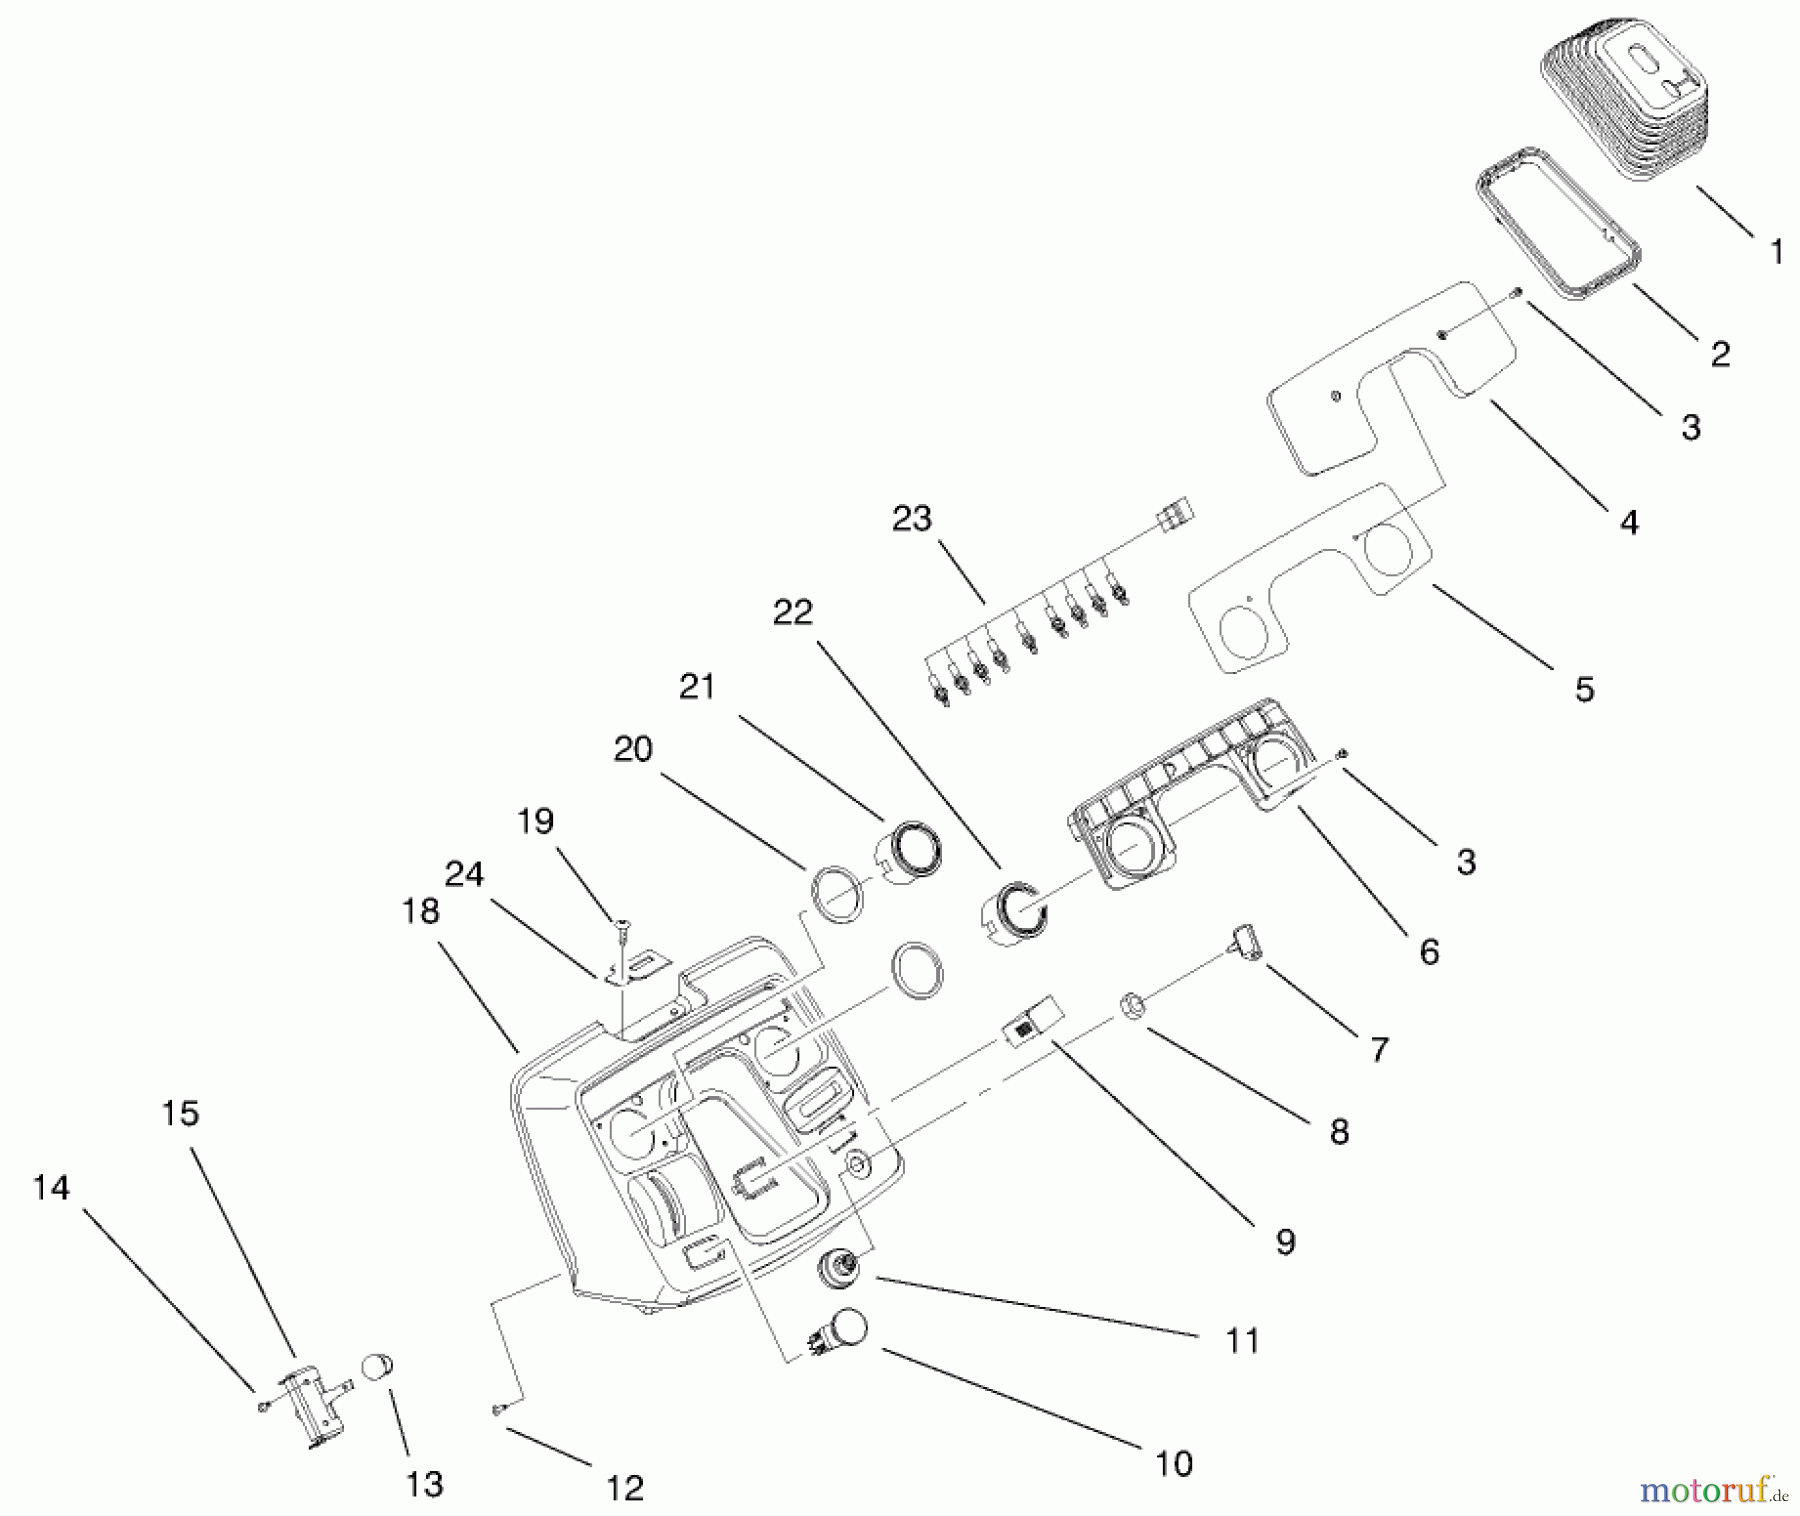  Toro Neu Mowers, Lawn & Garden Tractor Seite 1 73550 (523Dxi) - Toro 523Dxi Garden Tractor, 1998 (8900001-8999999) DASH ASSEMBLY